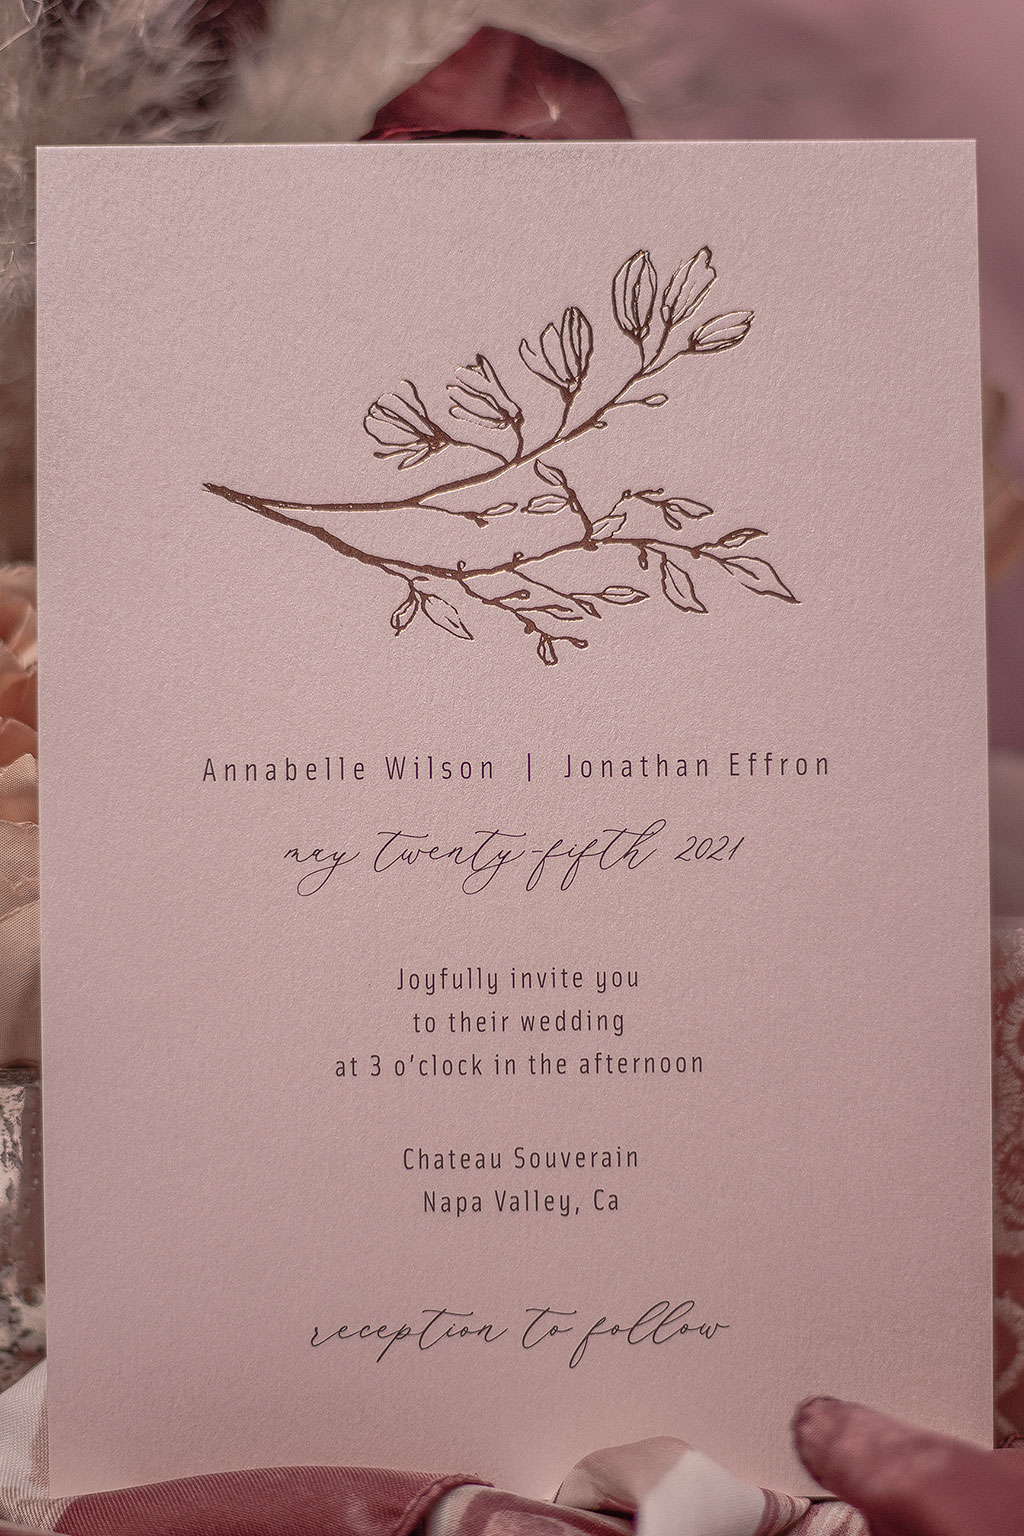 rosegold virágos esküvői meghívó választható árnyalatú pasztell rózsaszín papíron, fekete szöveg nyomtatással és fényesen csillogó rosegold fóliaprégeléssel